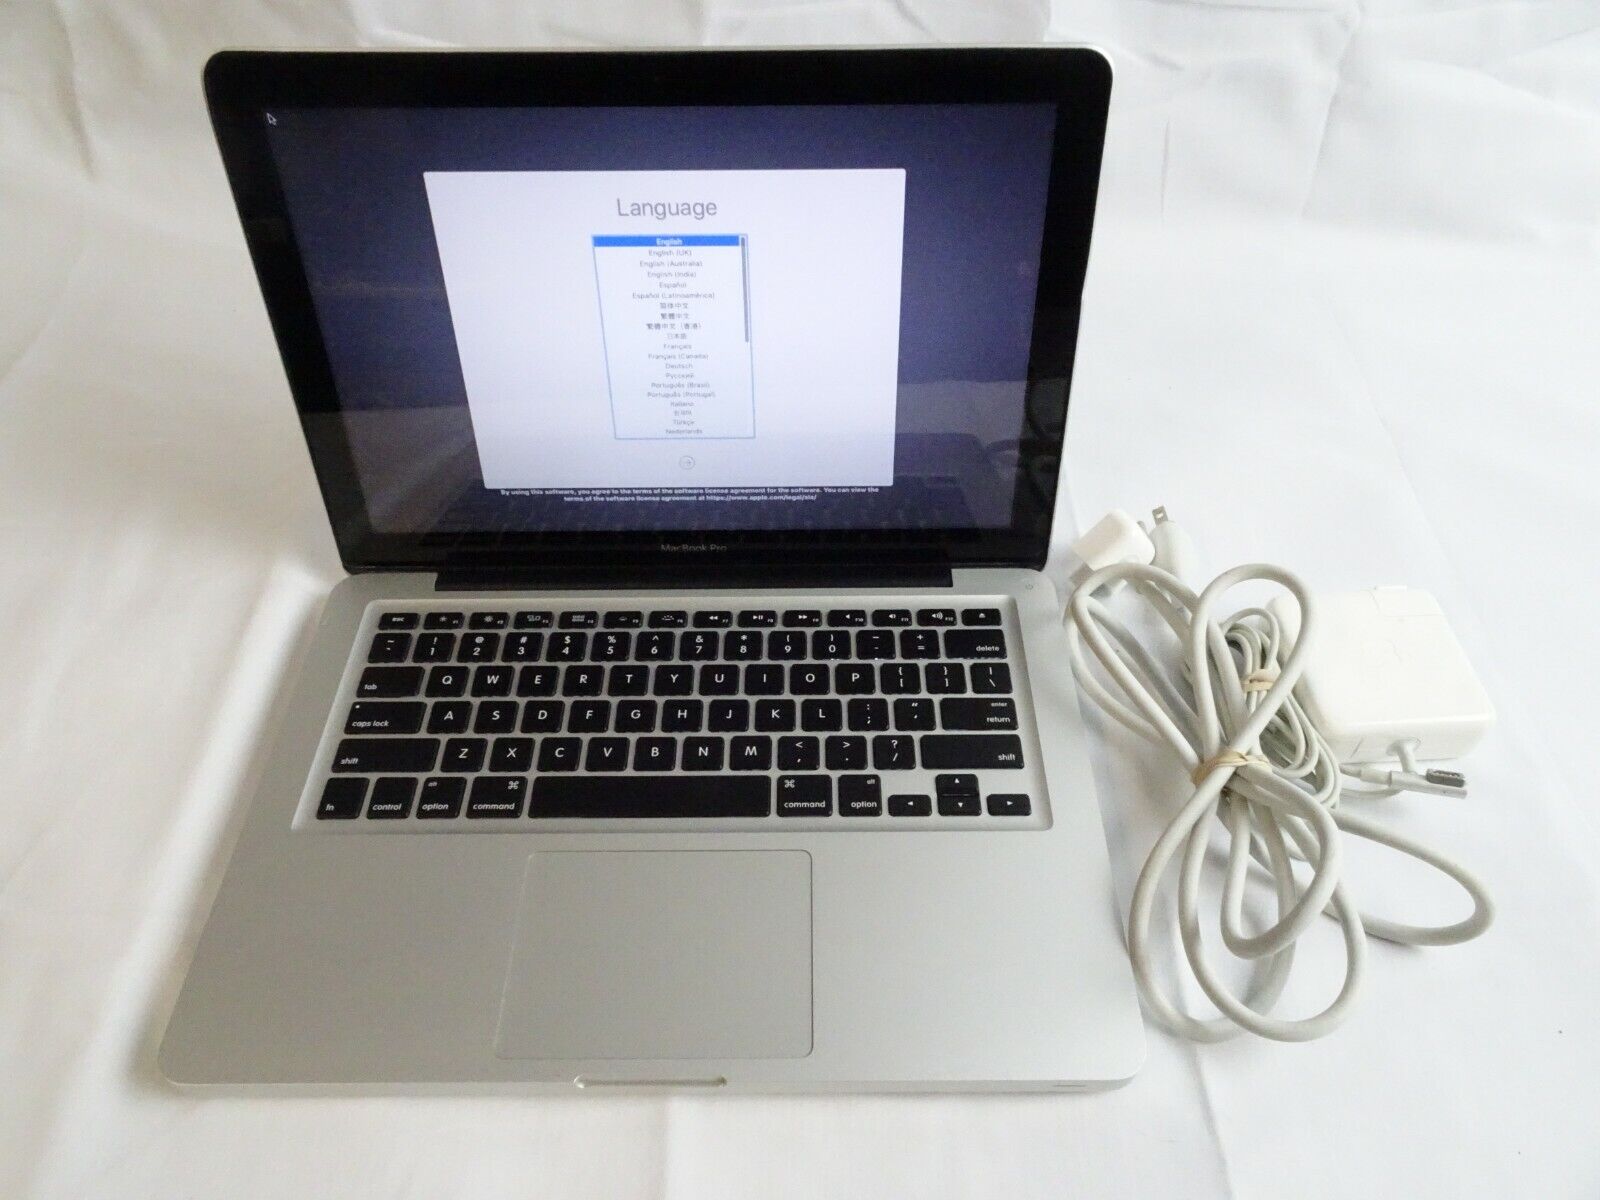 MacBook Pro 9,2 2012 | i5-3210m | 8GB RAM | 250GB SSD | 438 Cycles | READ